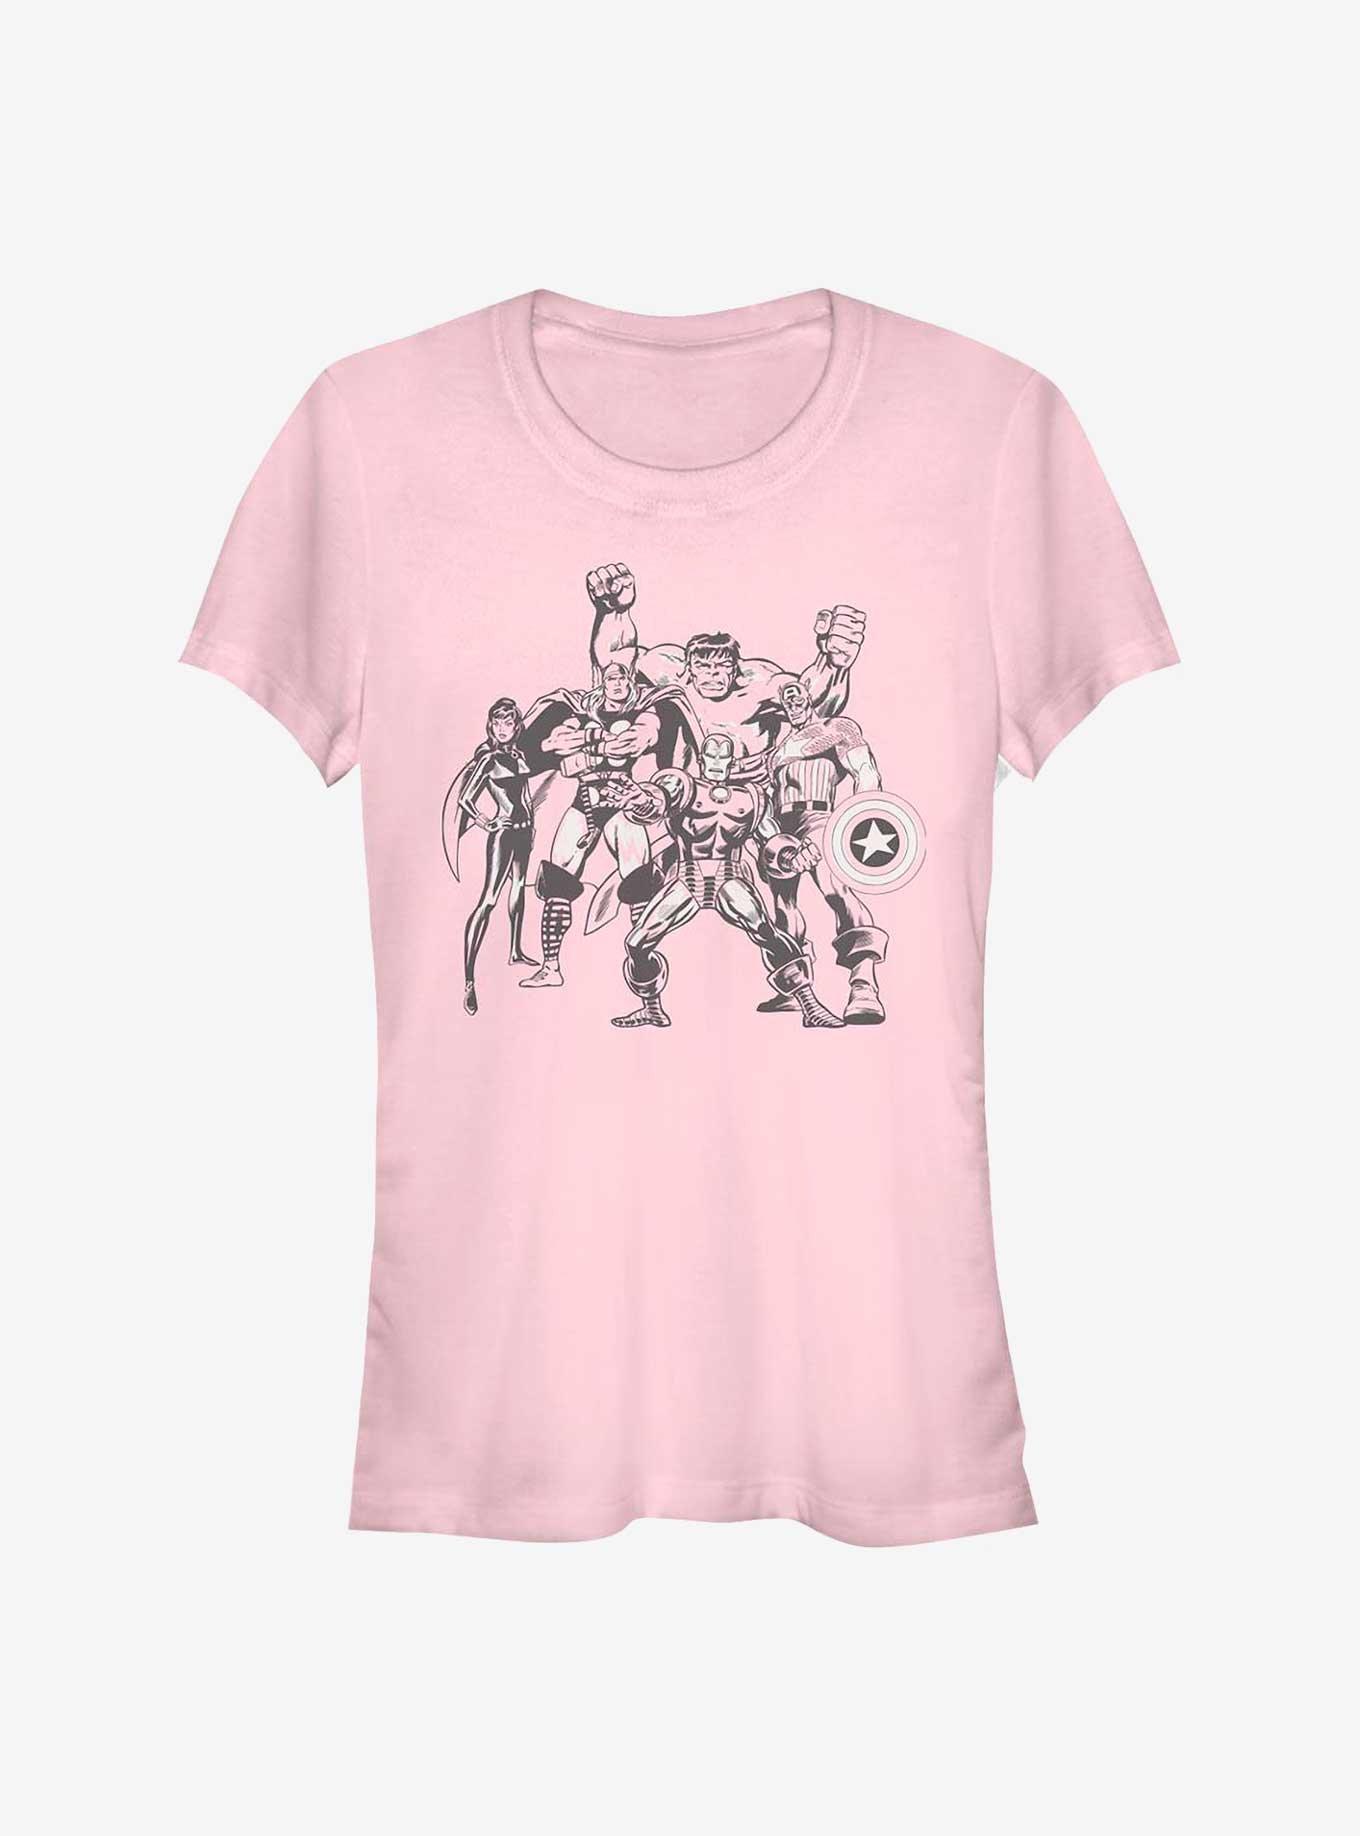 Marvel Avengers Retro Group Girls T-Shirt, LIGHT PINK, hi-res